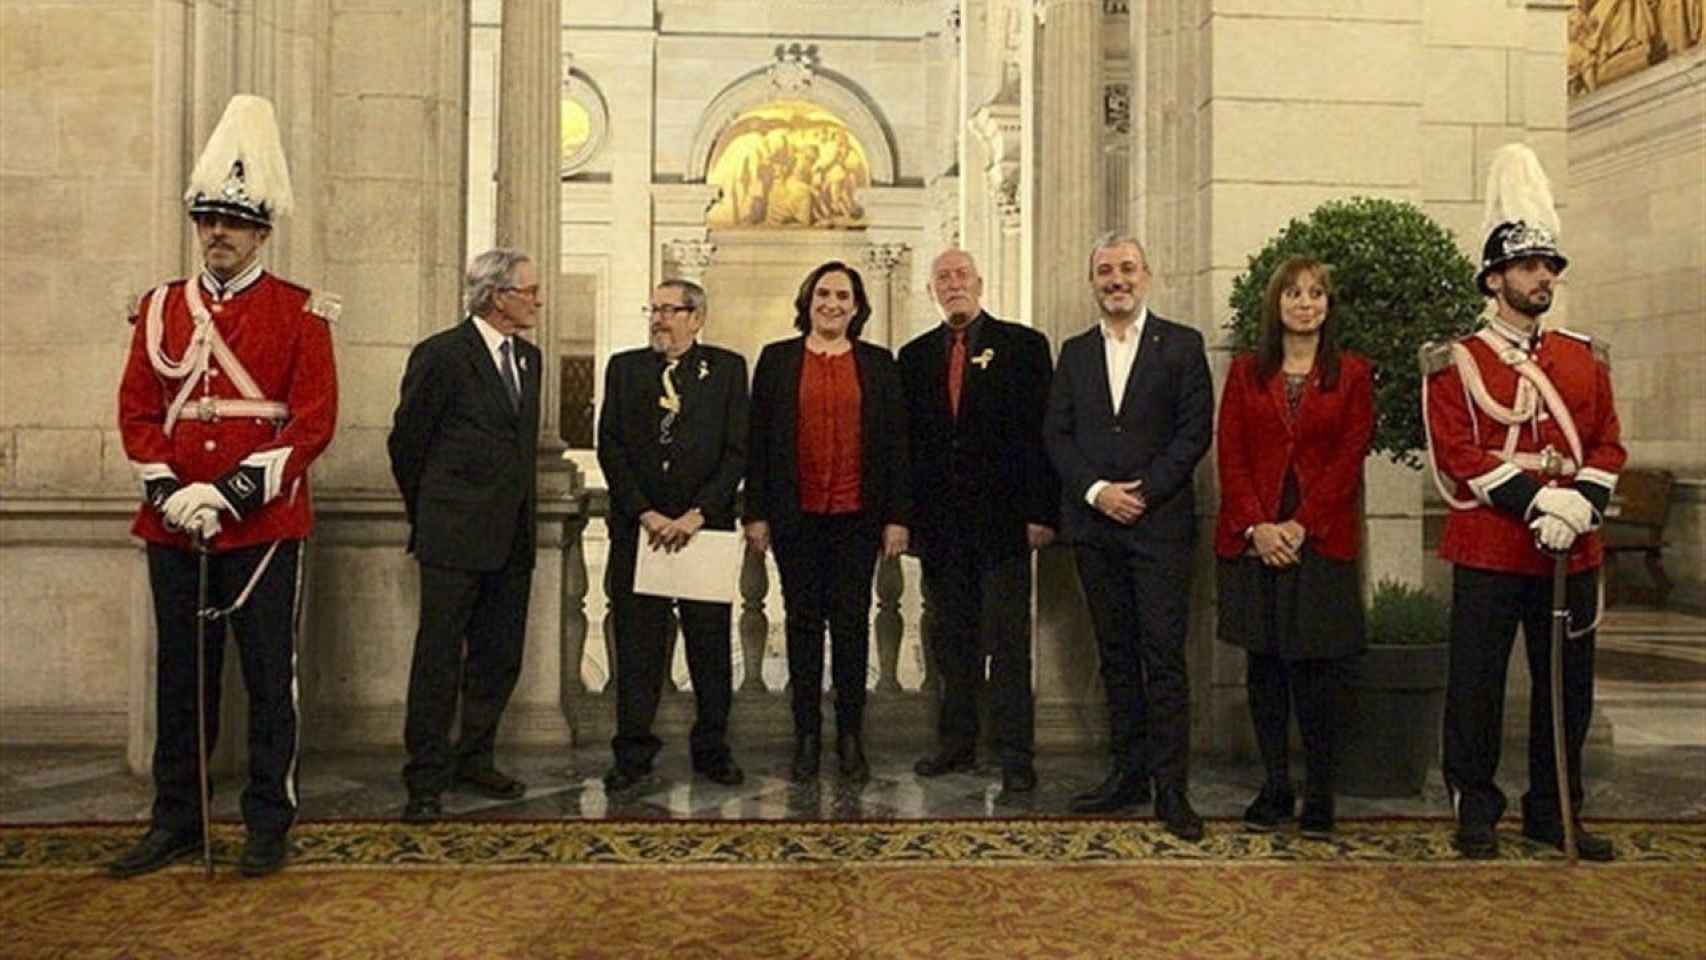 Paco Camarasa posa junto a Ada Colau y otros concejales tras recibir el premio / EUROPA PRESS